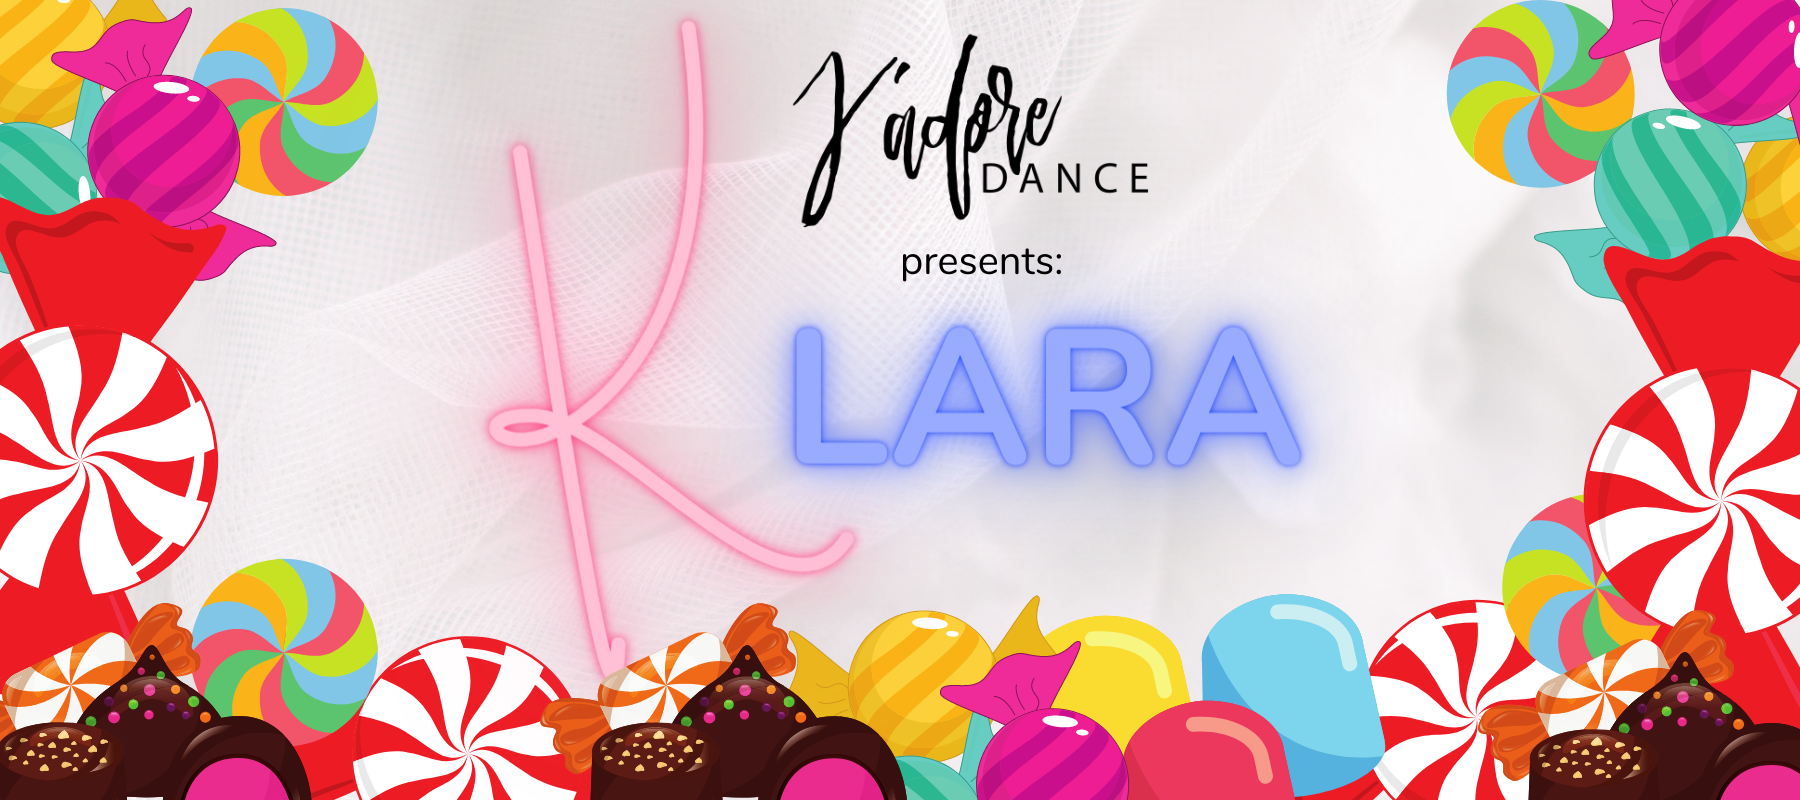  J'adore DANCE Presents: KLARA